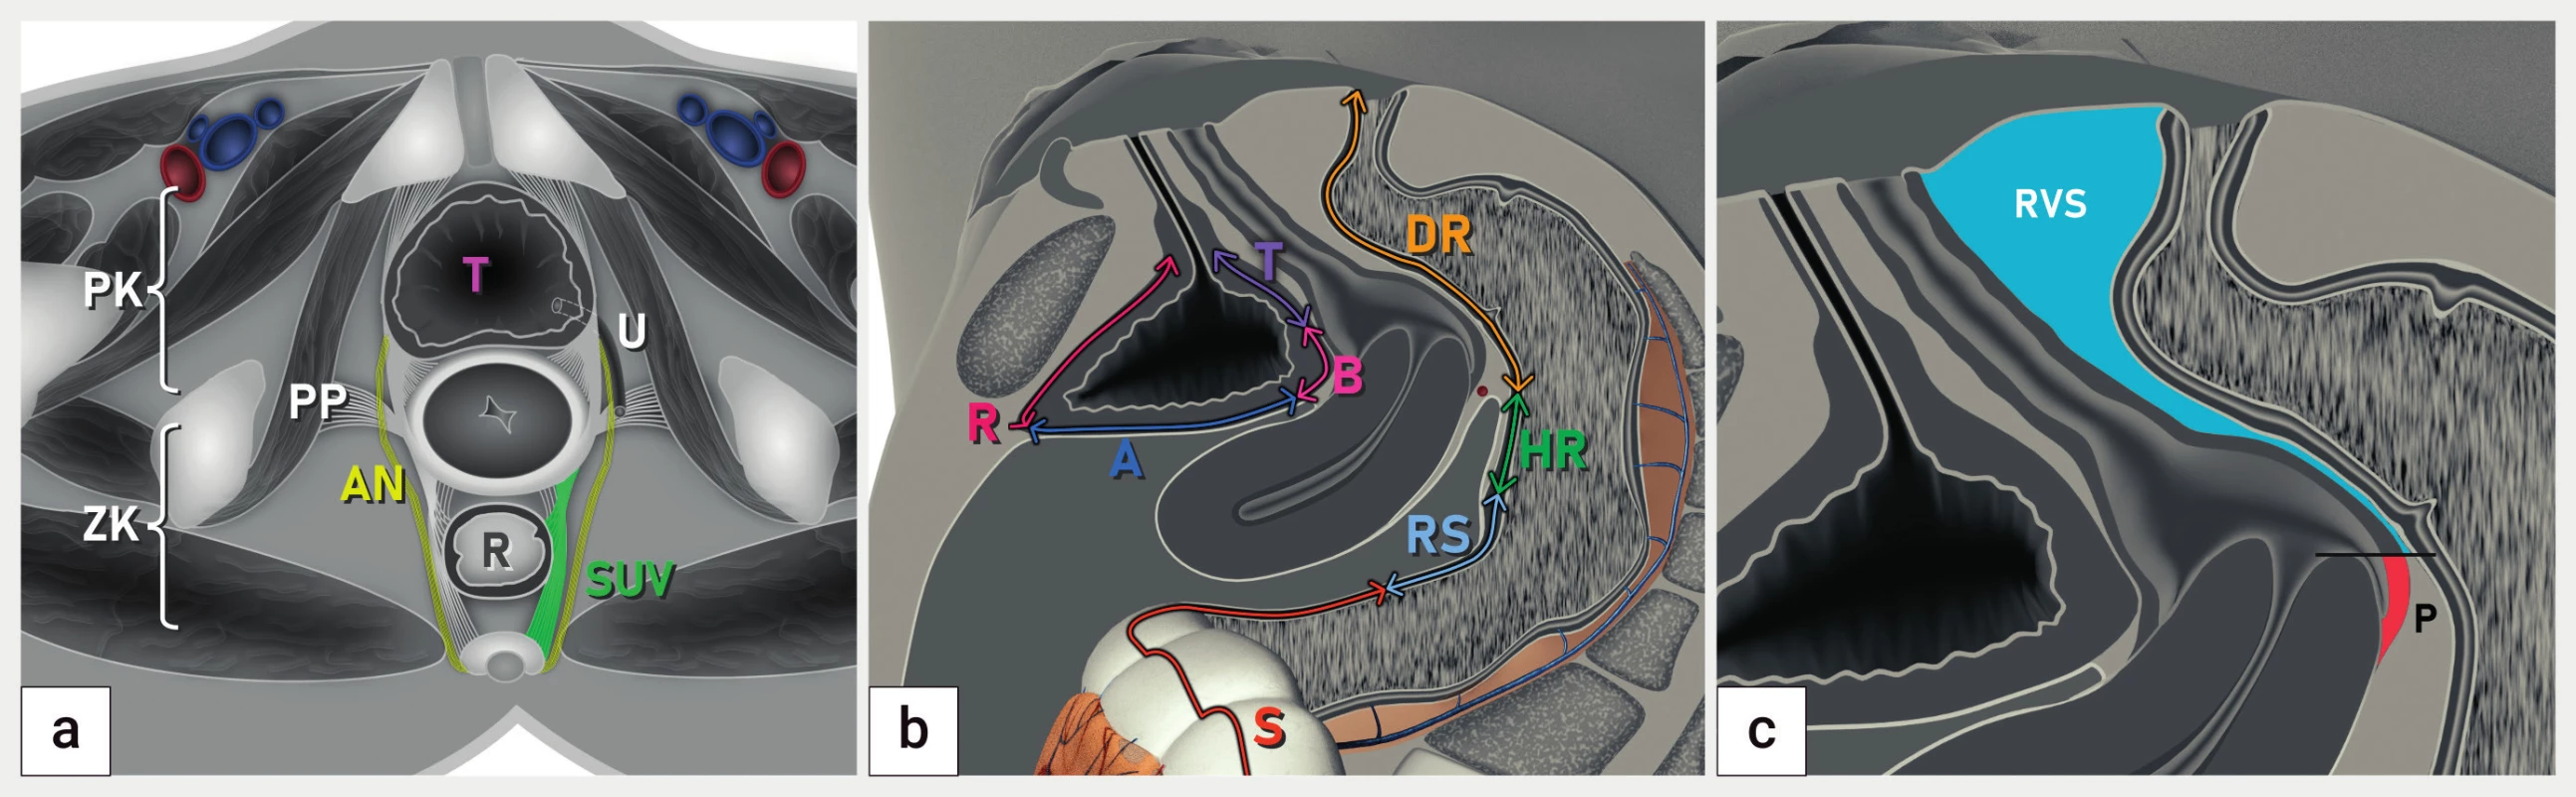 Lokalizace hluboké endometriózy podle doporučení IDEA<br>
Schéma koronárního řezu pánví (a), sagitálního řezu se zobrazením anatomických struktur močového měchýře a rekta (b) a sagitálního řezu
pánví se zobrazením zadní stěny pochvy a rektovaginálního septa
A – abdominální úsek močového měchýře (vertex), B – baze močového měchýře, DR – dolní rektum, HR – horní rektum, P – pochva, PK – přední
kompartment, PP – postranní parametria, R – retroperitoneální část močového měchýře, RS – rektosigmoideum, RVS – rektovaginální septum,
S – sigmoideum, SUV – sakrouterinní vazy, T – trigonum močového měchýře, U – ureter; ZK – zadní kompartment